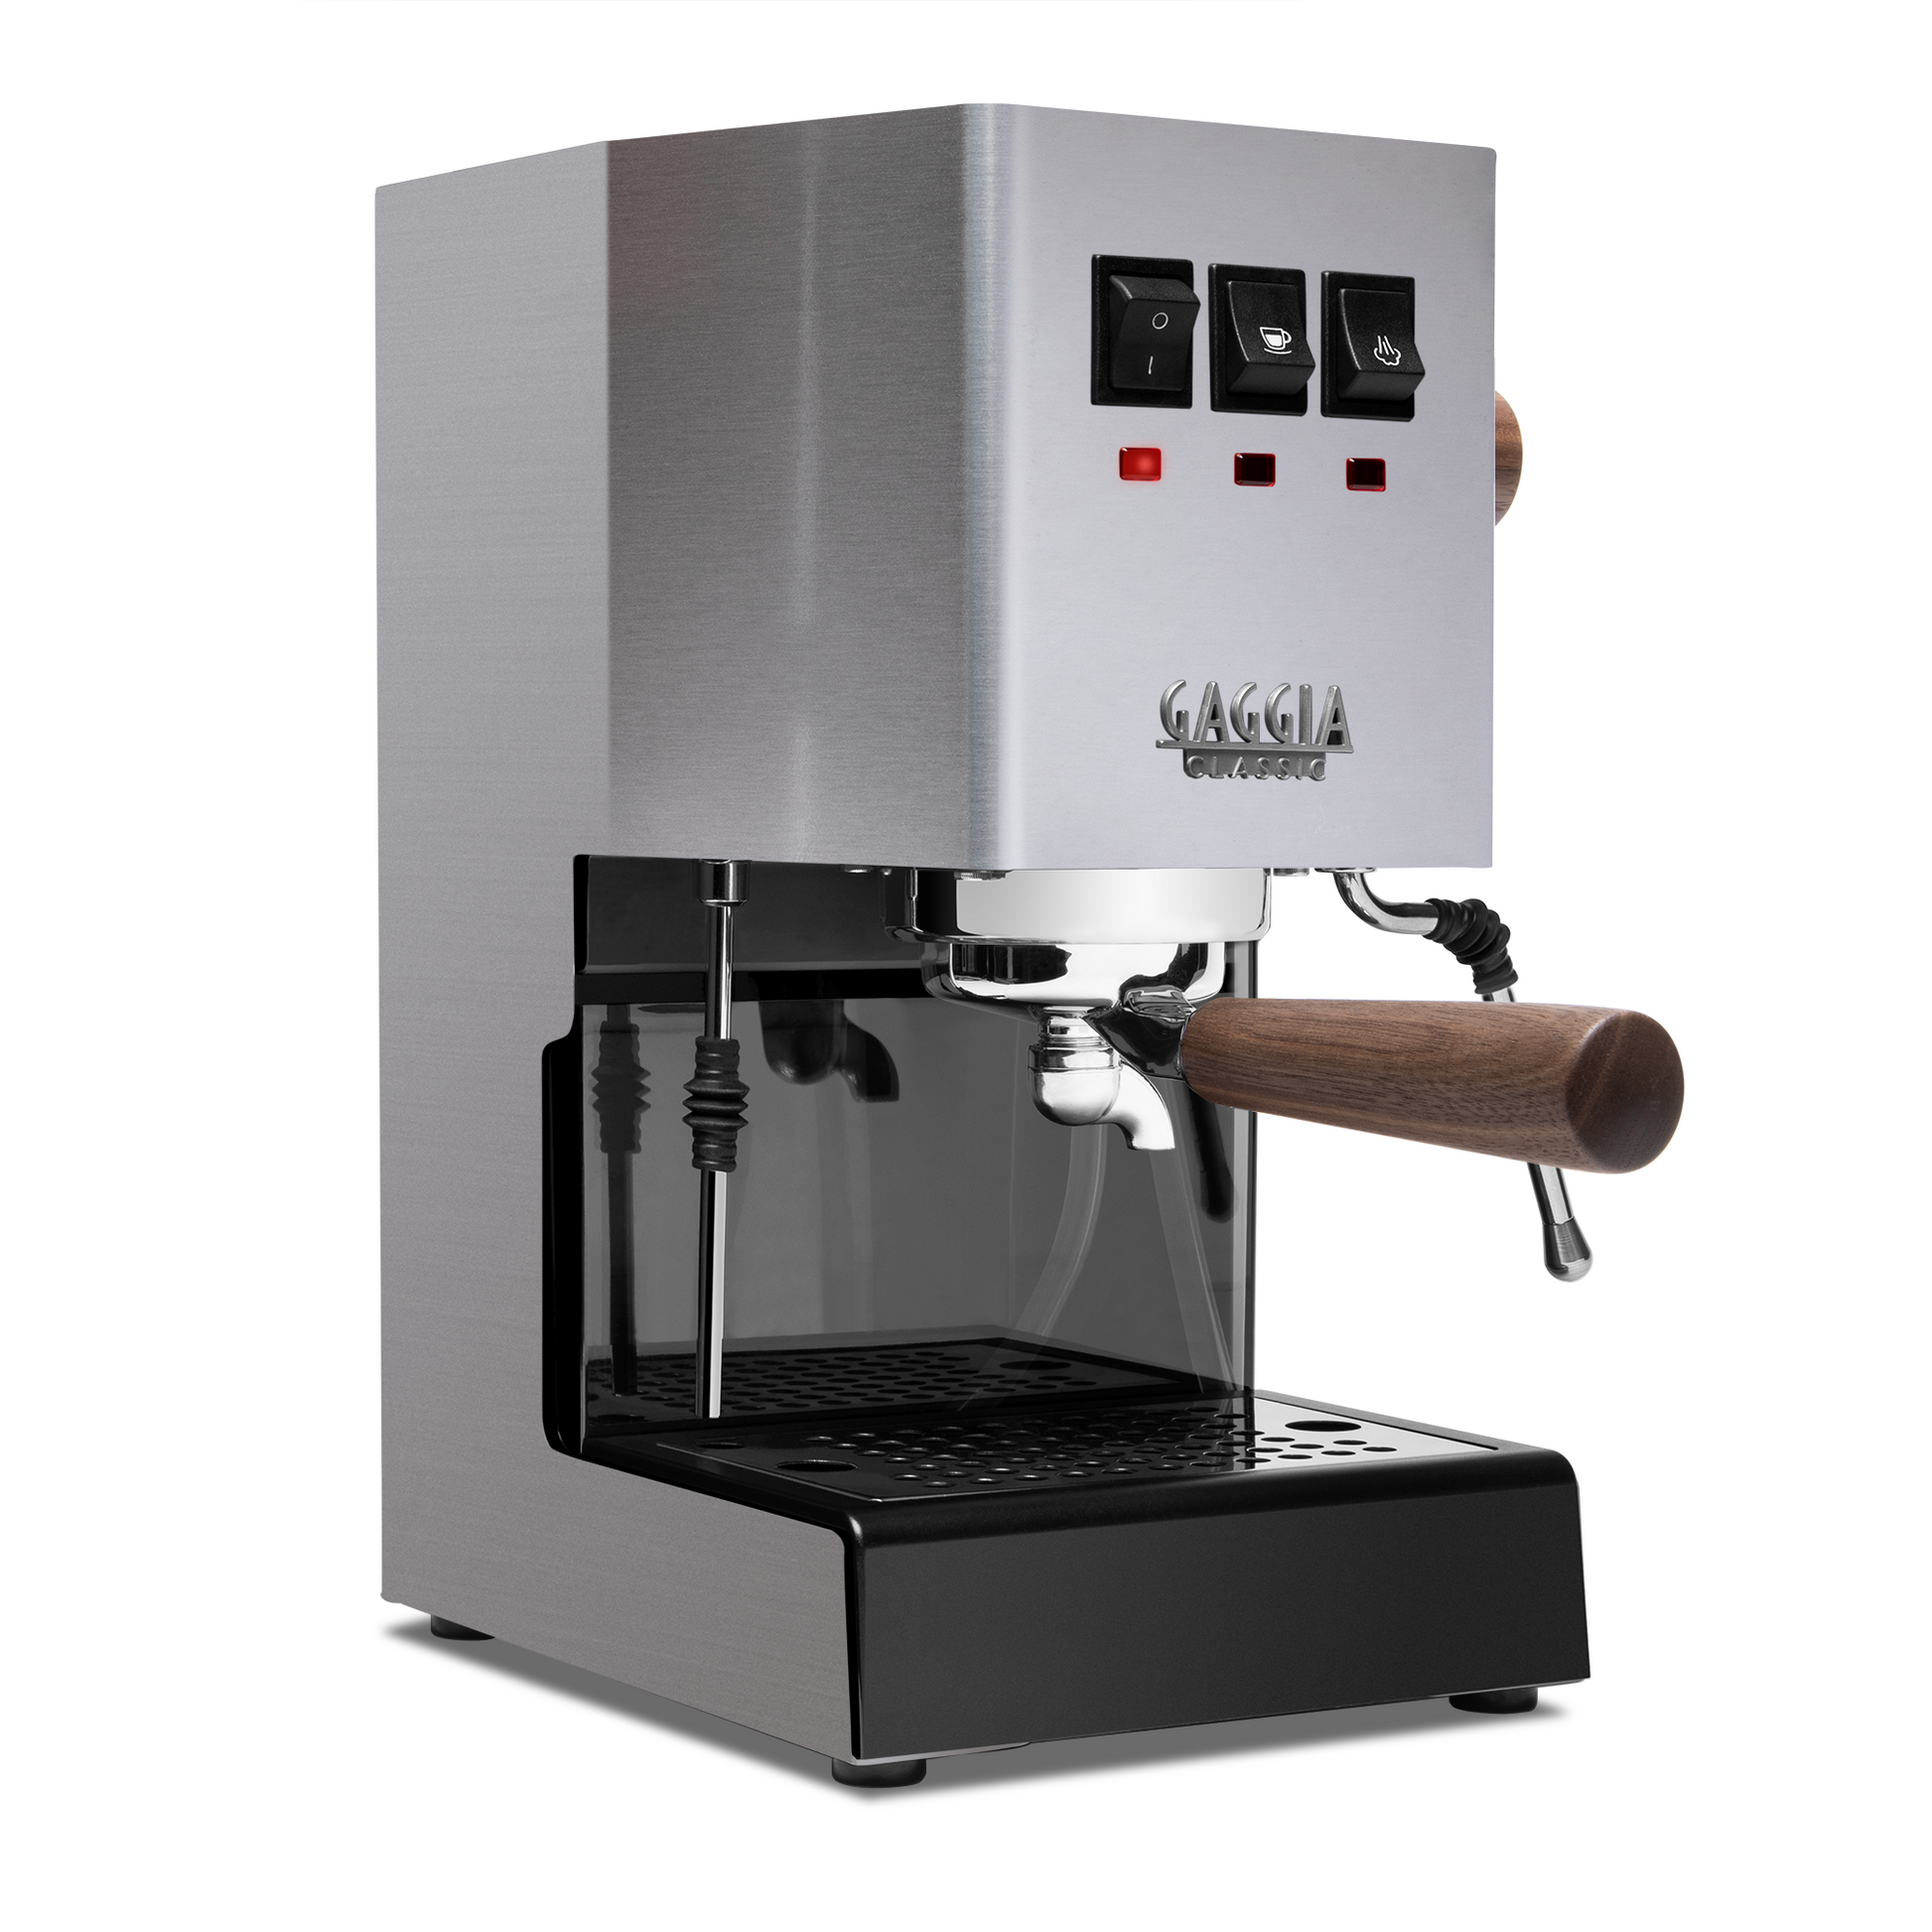 Illy E.S.E. Pod Coffee Machine - Red – Whole Latte Love